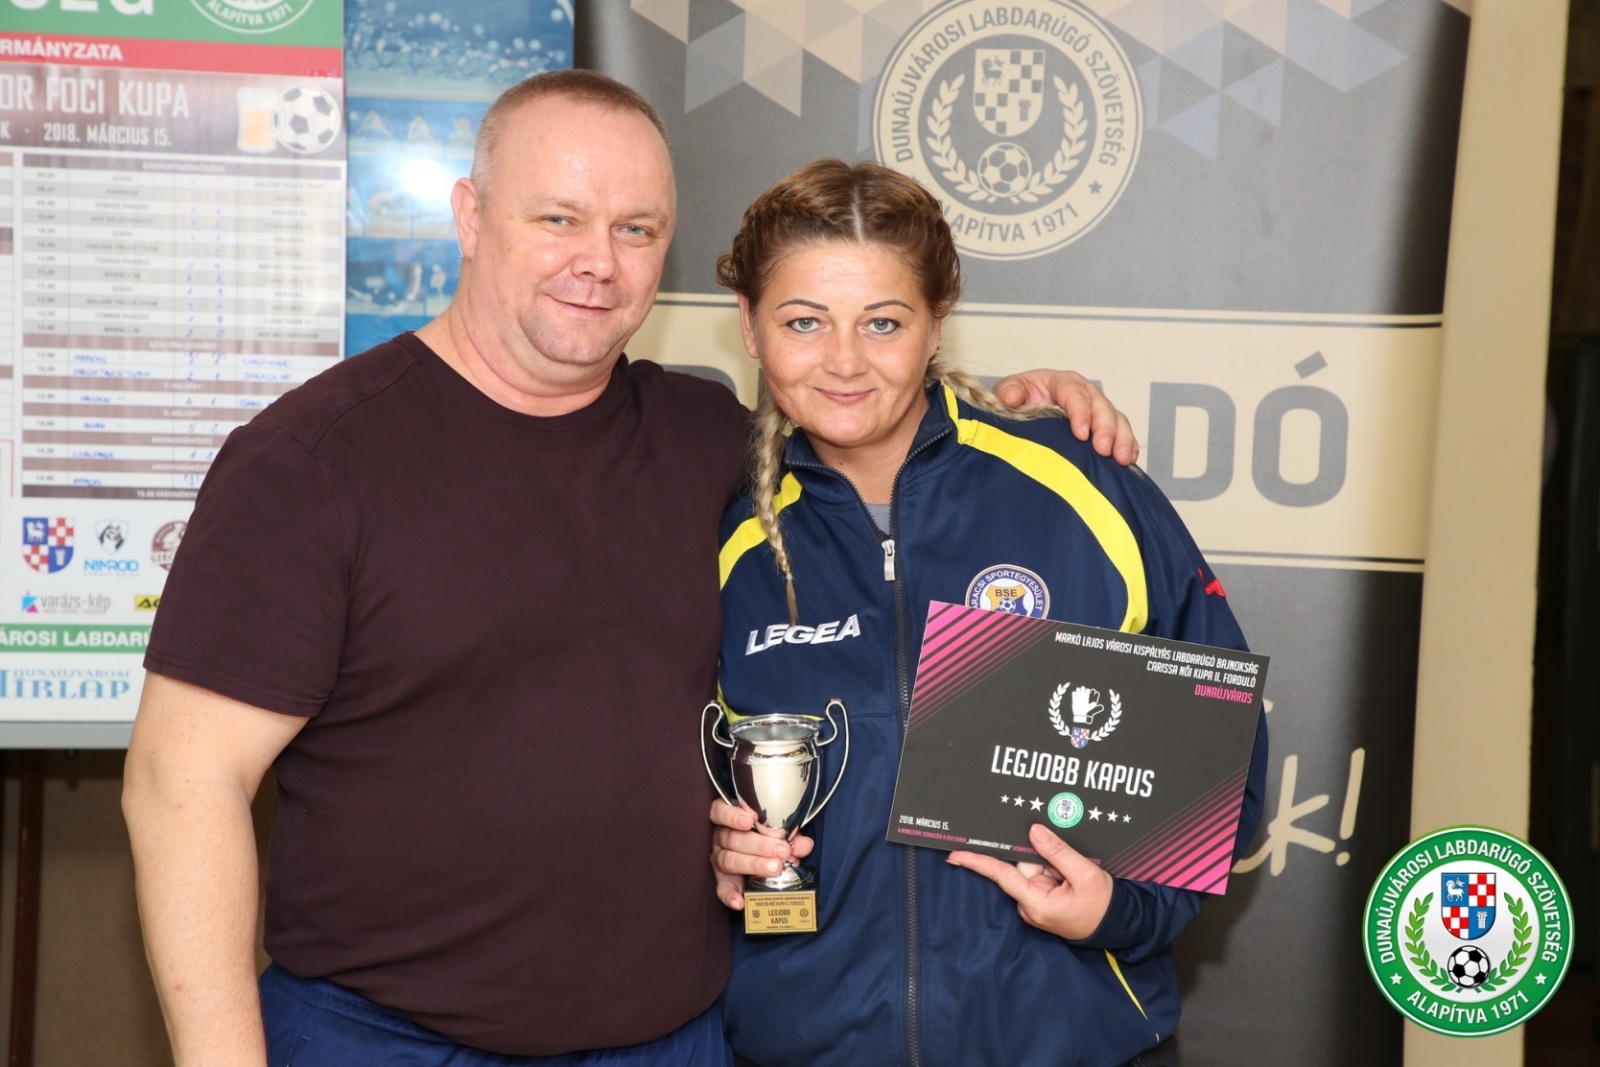 Carissa Női kupa Kovács Klaudia a legjobb kapus 2018